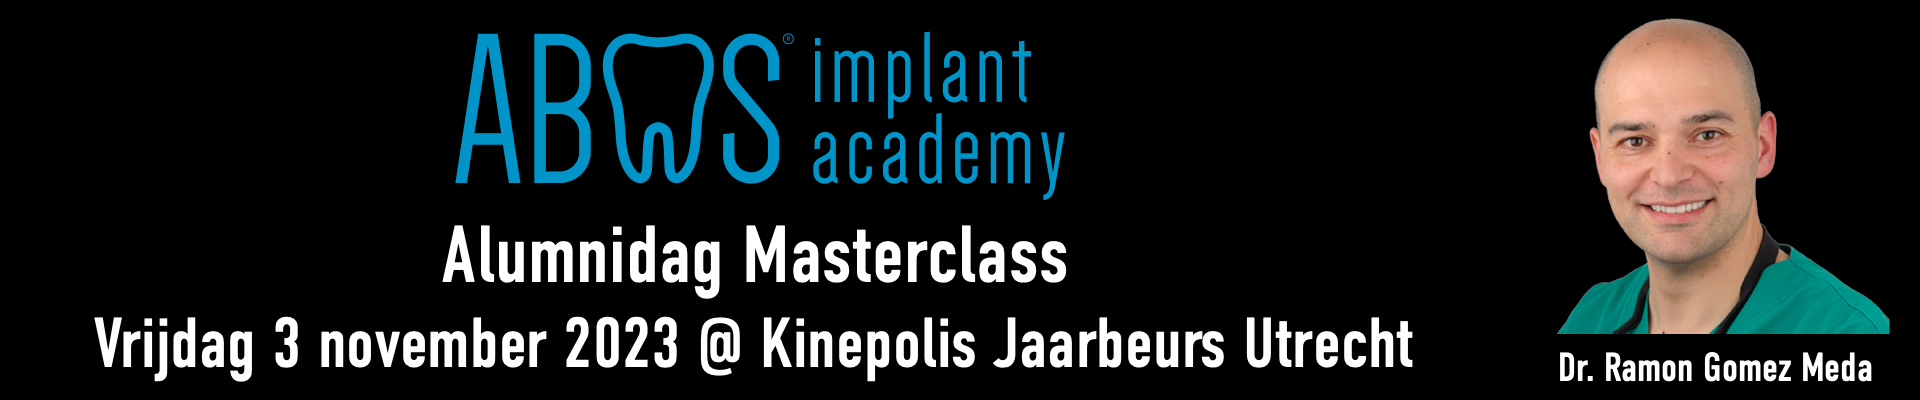 Abas Implant Academy Alumnidag 2023